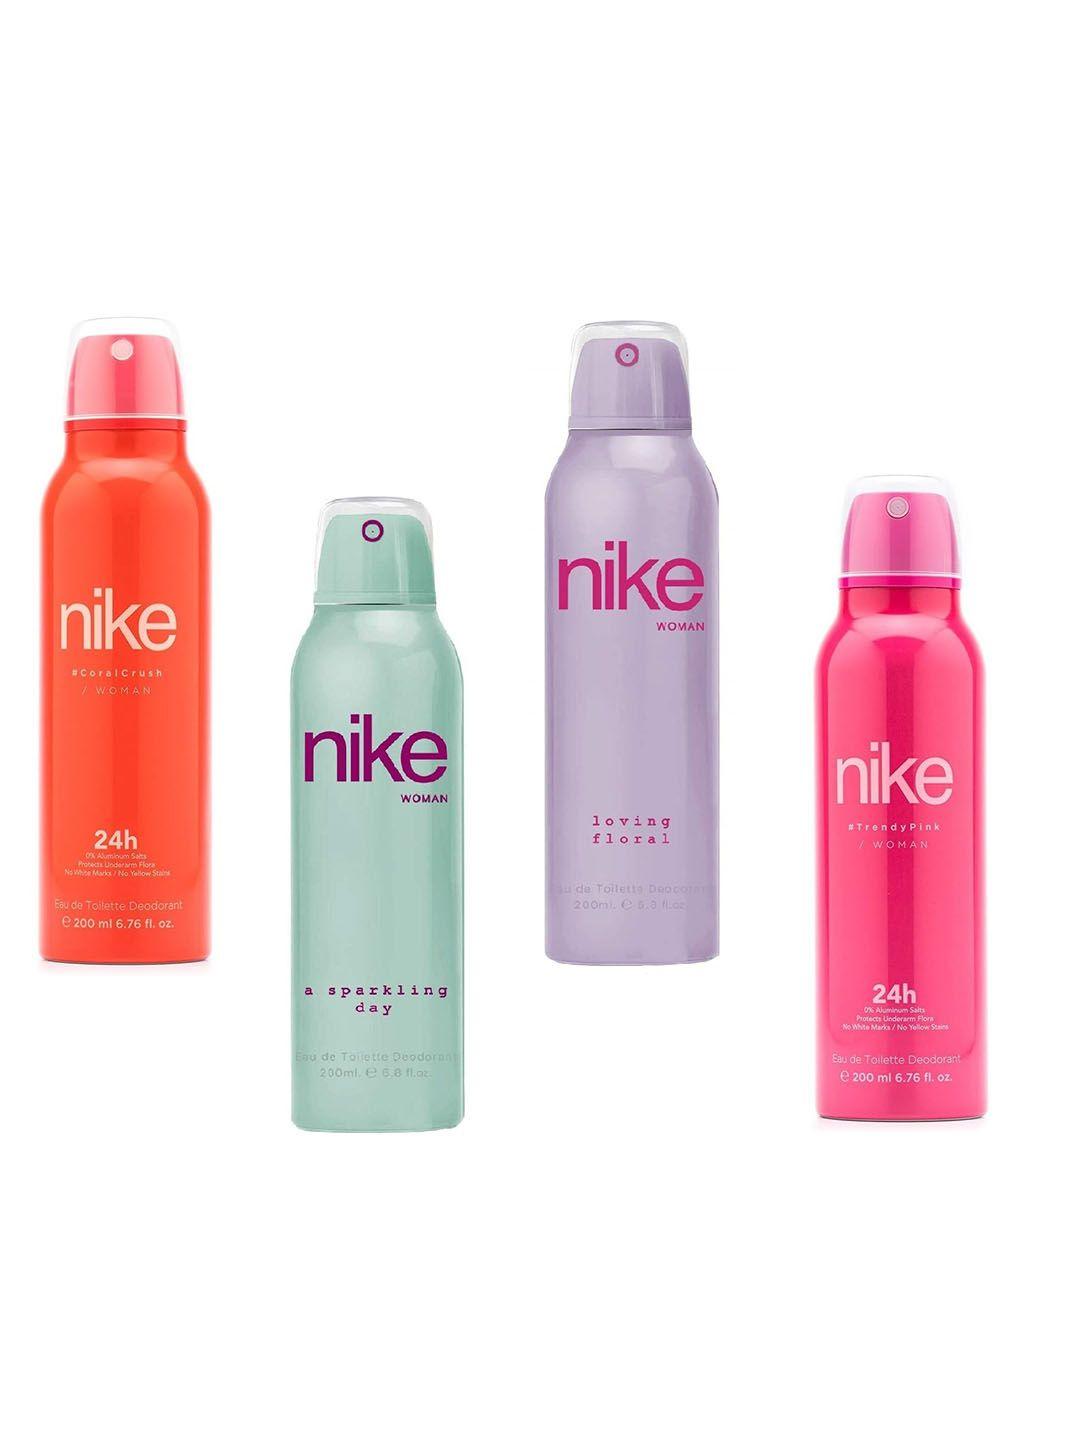 nike-women-set-of-4-long-lasting-eau-de-toilette-deodorant---200-ml-each